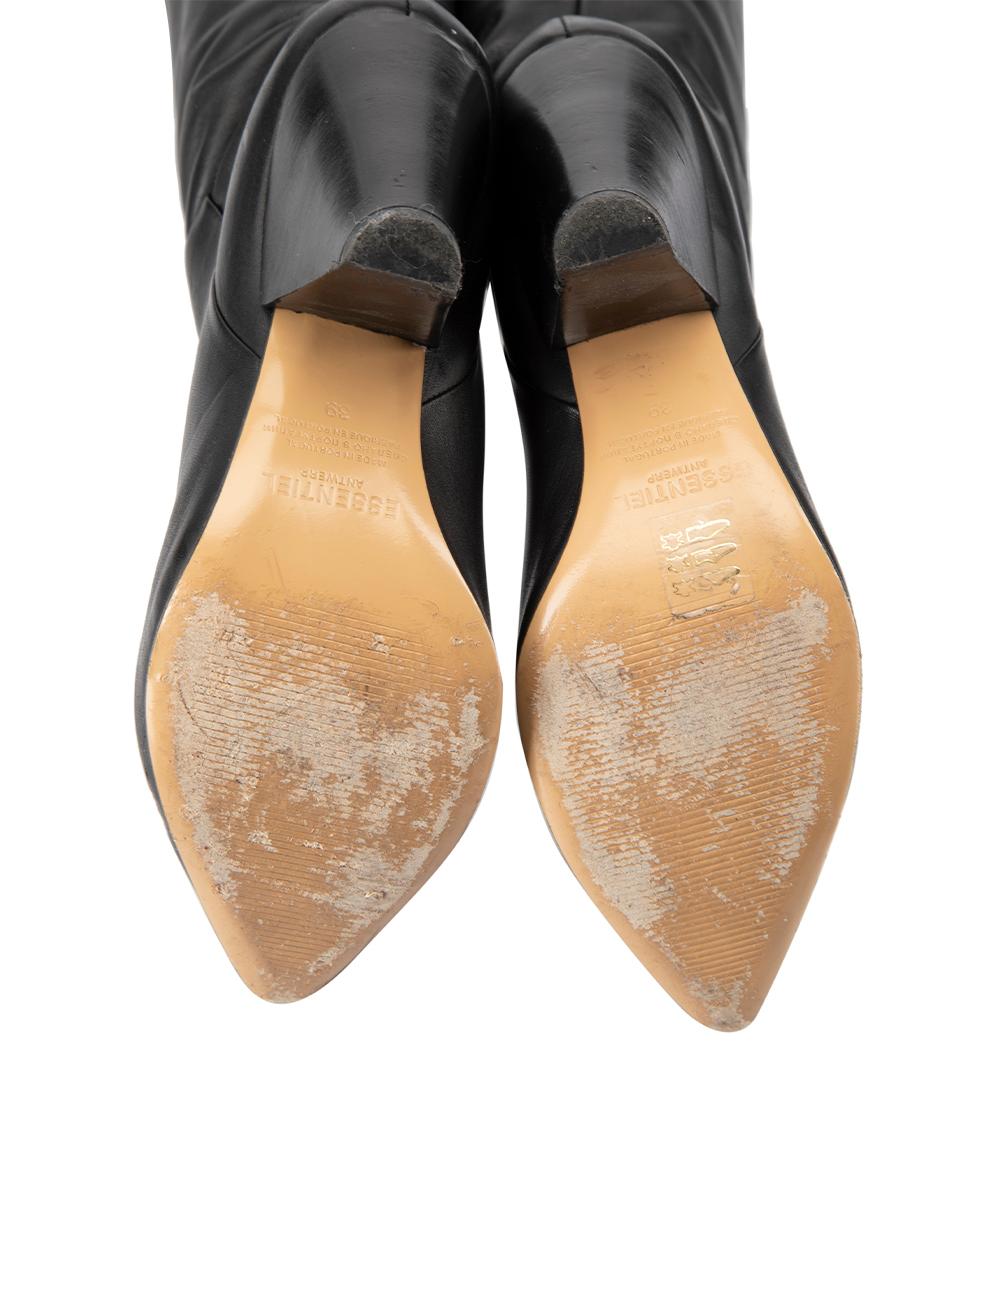 Essentiel Antwerp Women's Black Leather Thigh High Heeled Boots 1